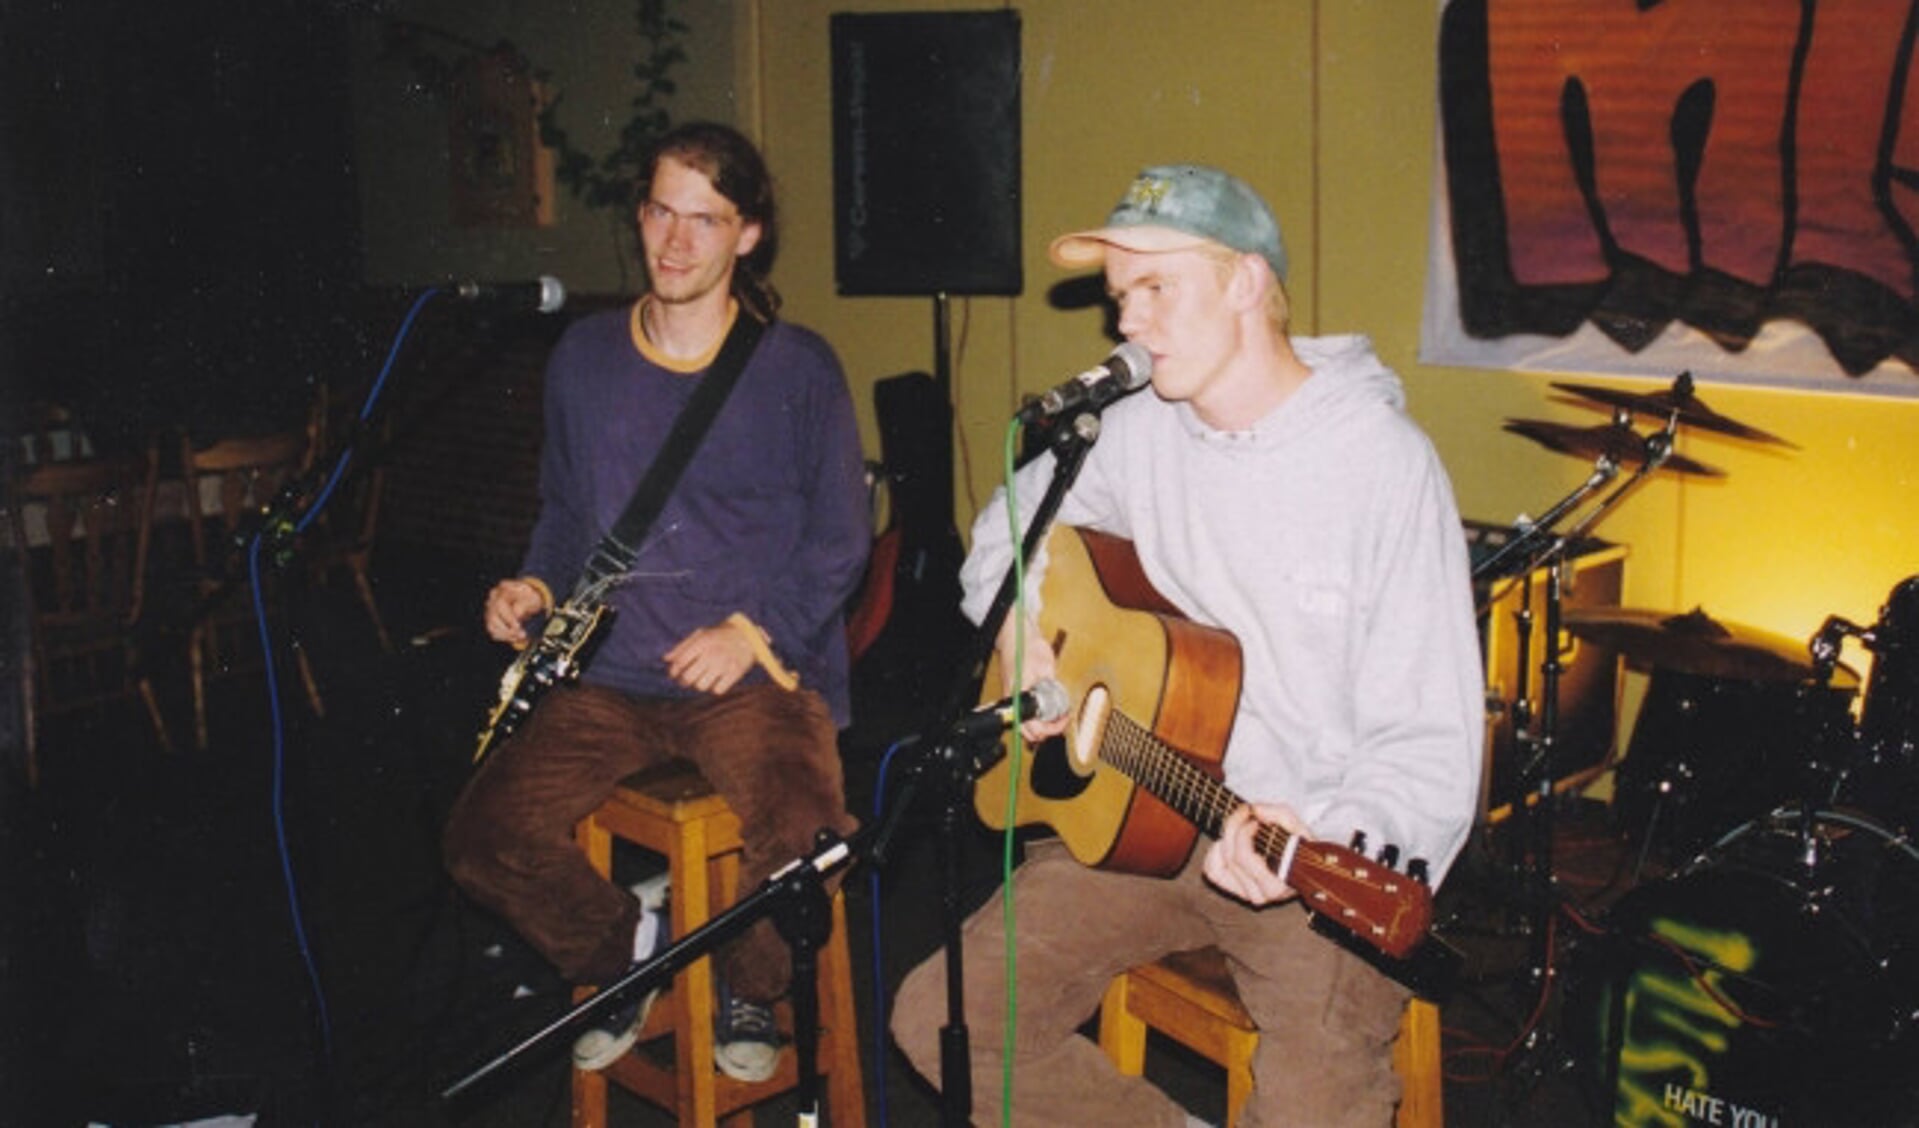  Emiel (links) en Bas tijdens een optreden van MisH in de Generaal-majoor Kootkazerne in Garderen in 1998.